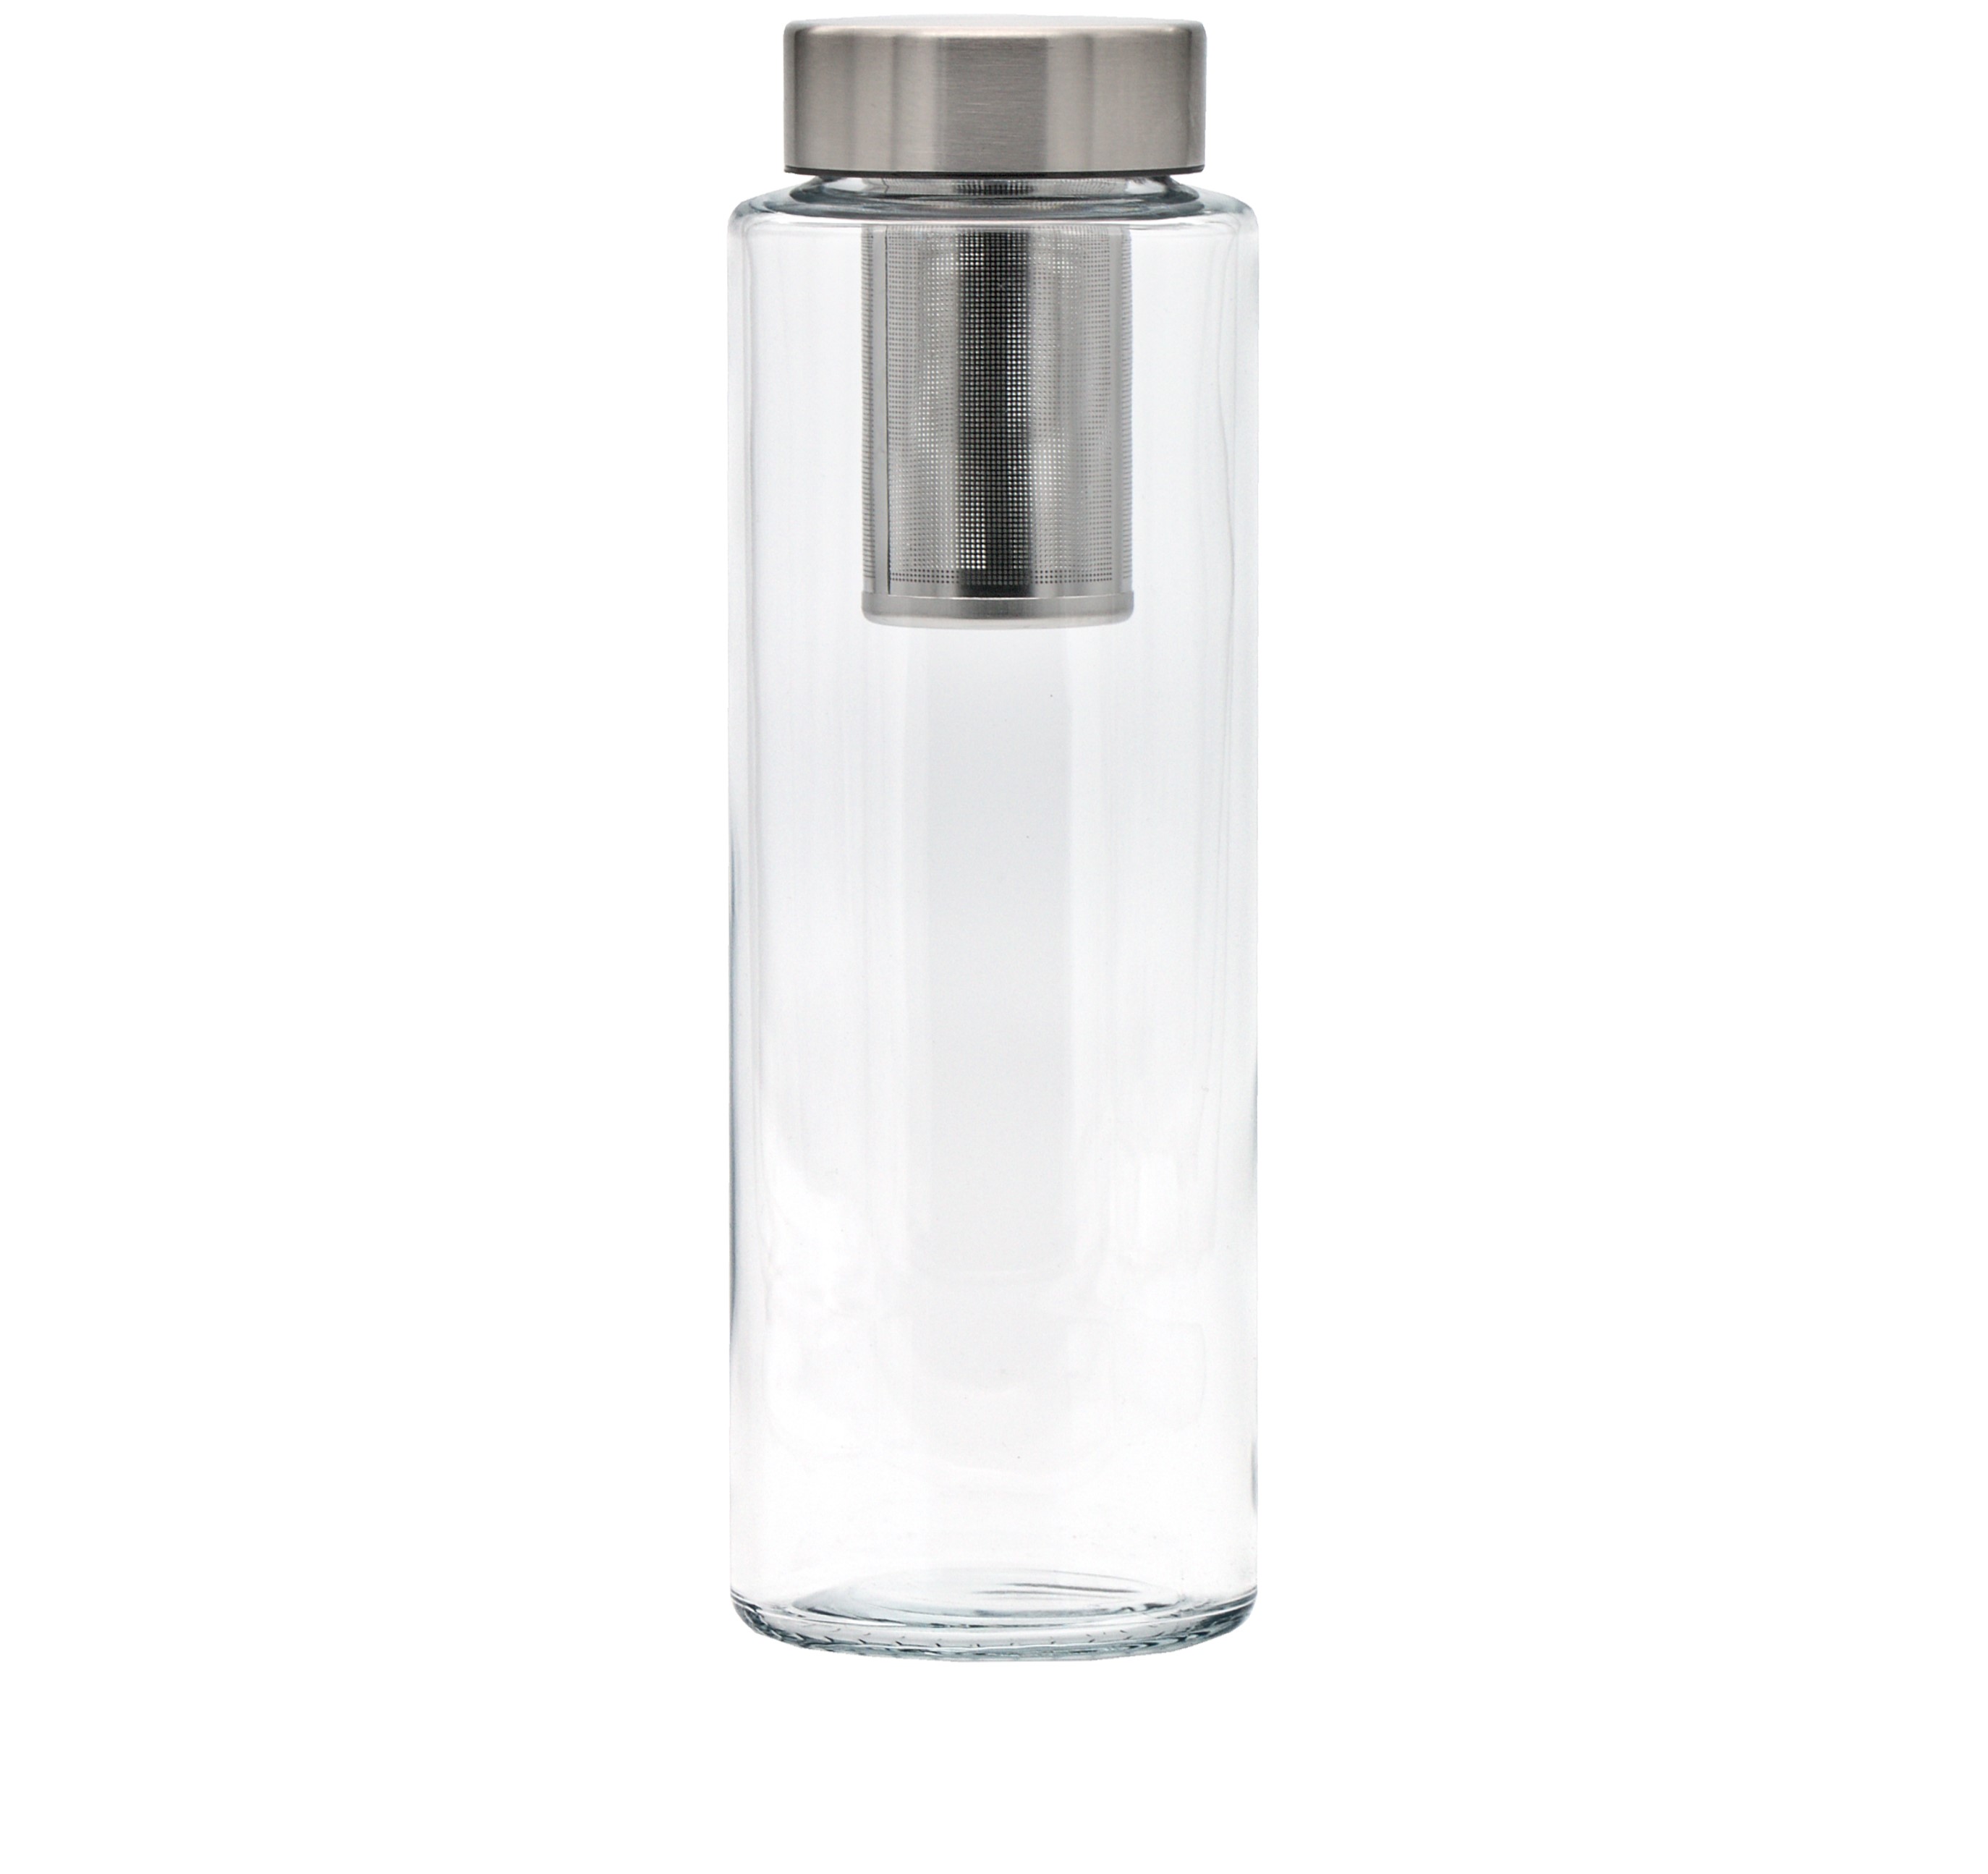 Exklusive SIMAX Trinkflasche aus Borosilikatglas in einfachen zylindrischen Design mit Siebeinsatz und einer Füllmenge von 1000 ml